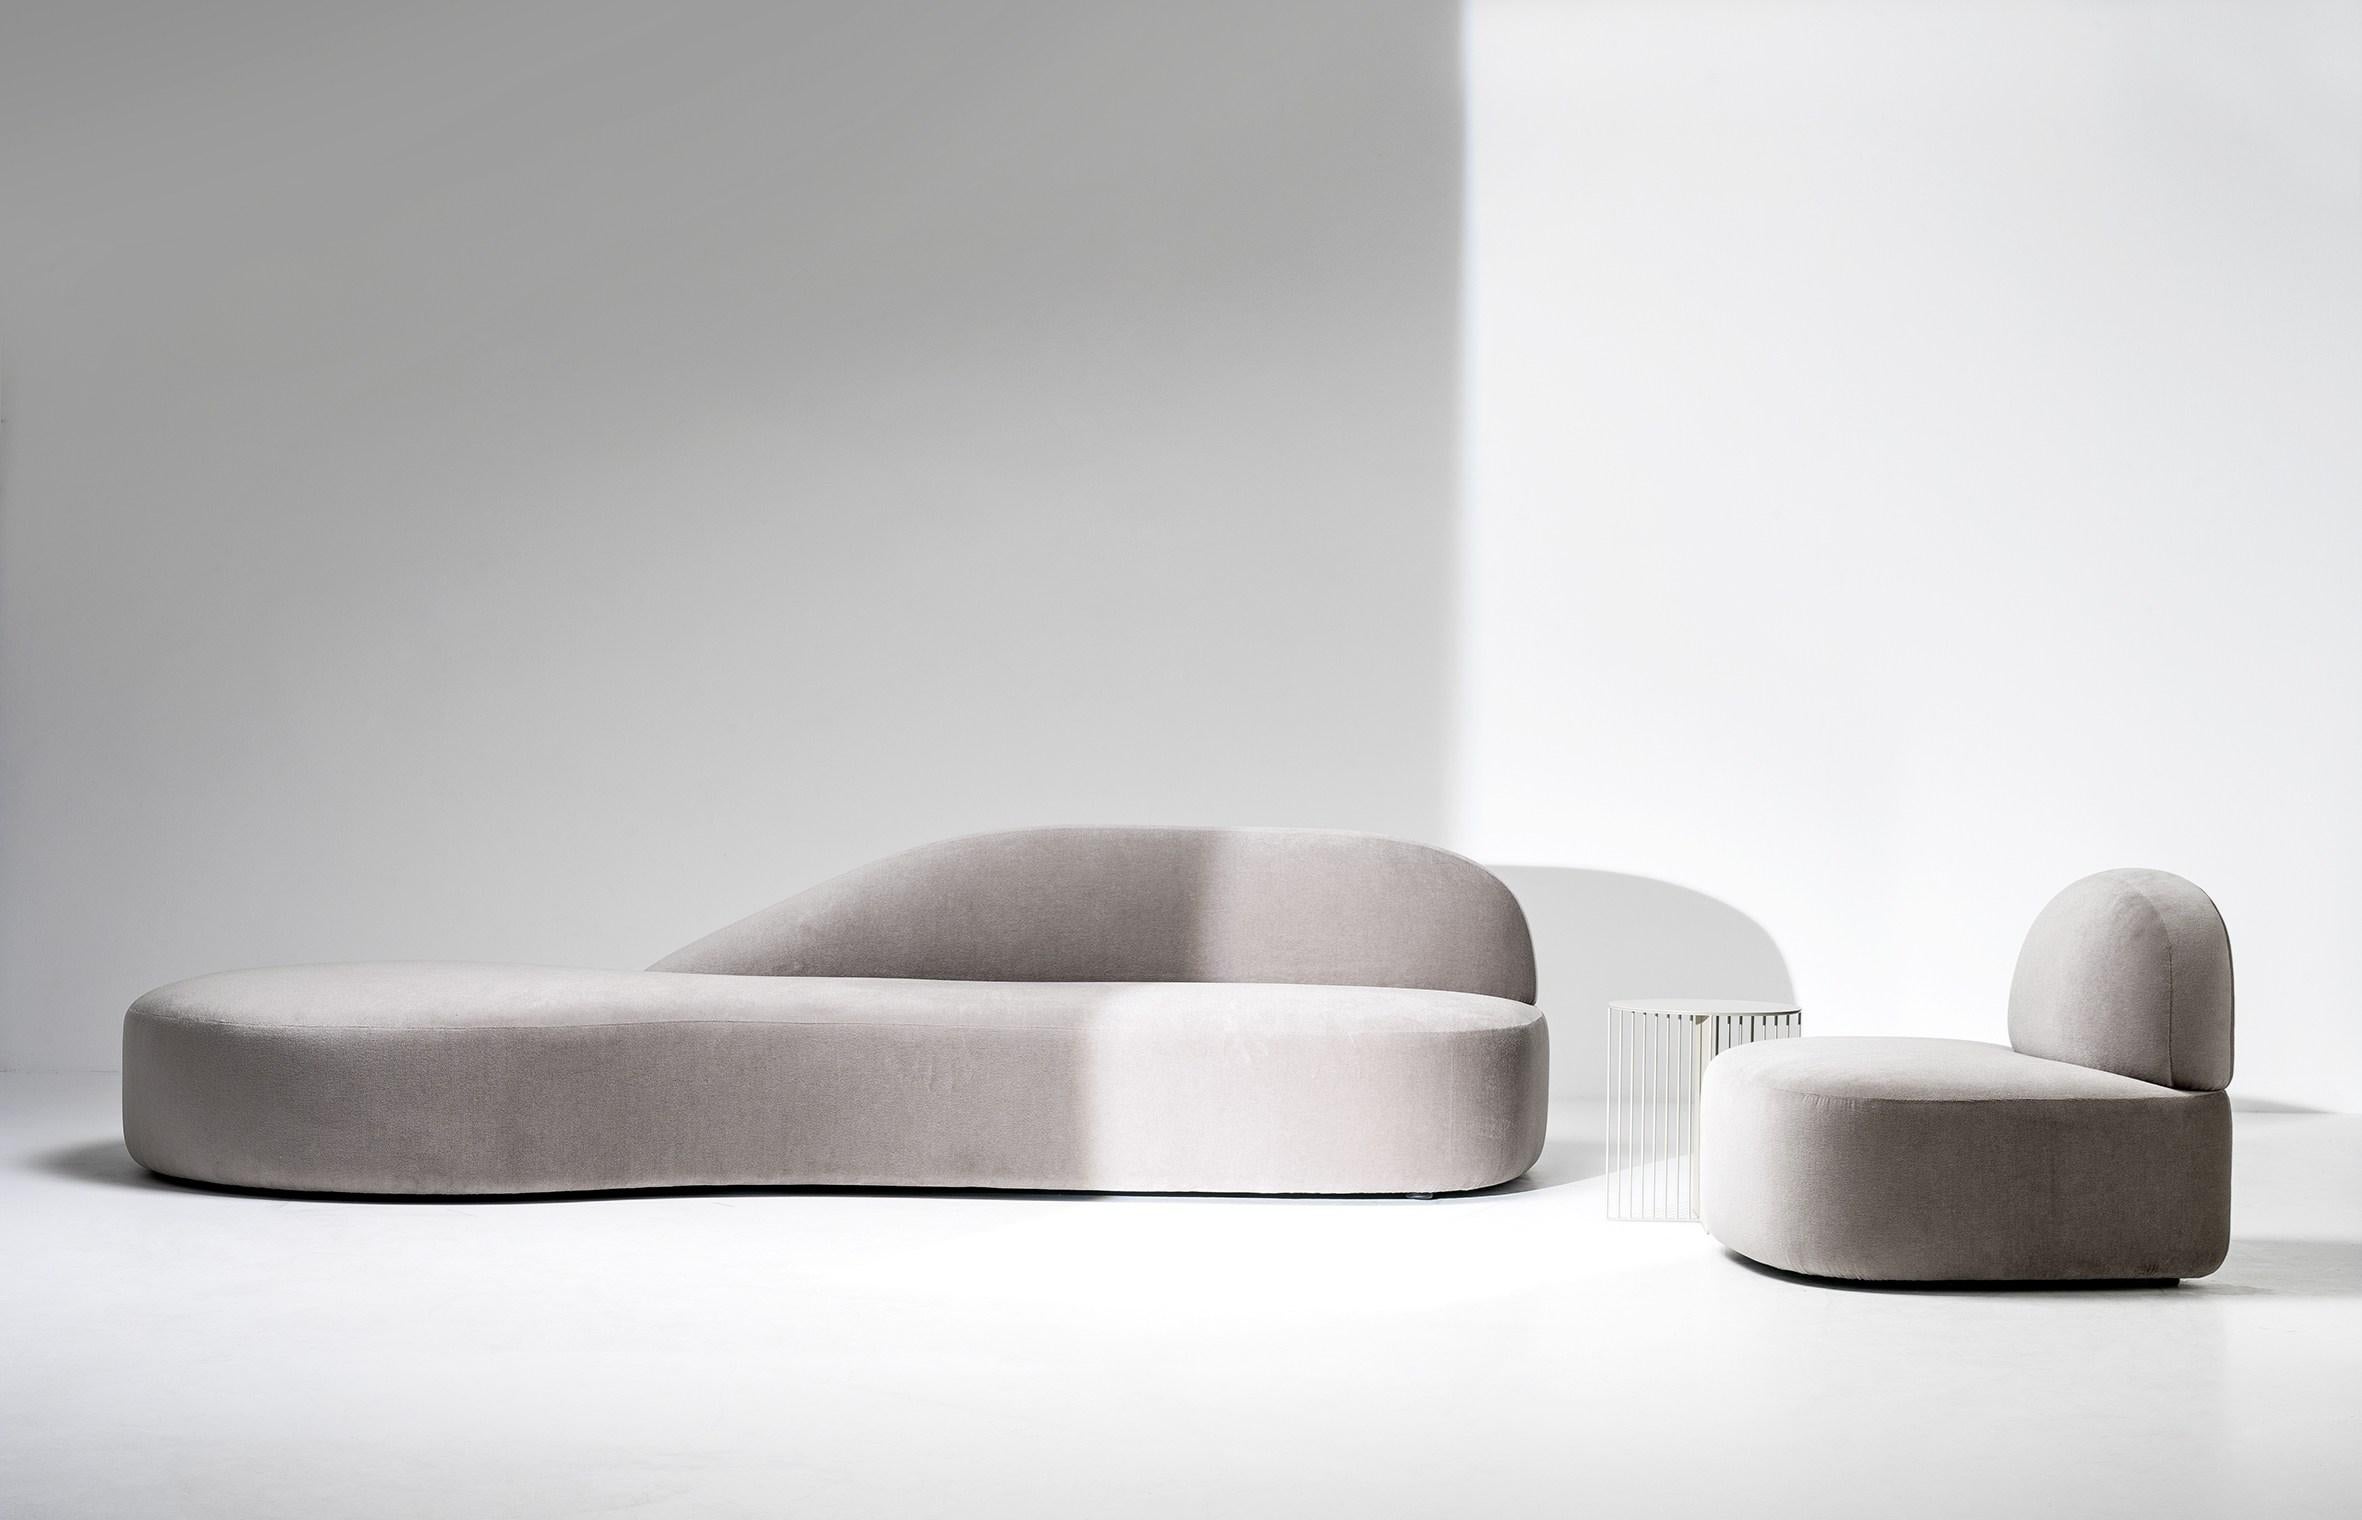 Handgefertigtes, skulpturales Sofa mit geschwungenen Linien und plüschigen Sitzflächen. Dieses Sofa bietet ein einzigartiges komfortables Sitzerlebnis, das in einem meisterhaften italienischen Produktionsverfahren hergestellt wird. Das Sofa ist mit